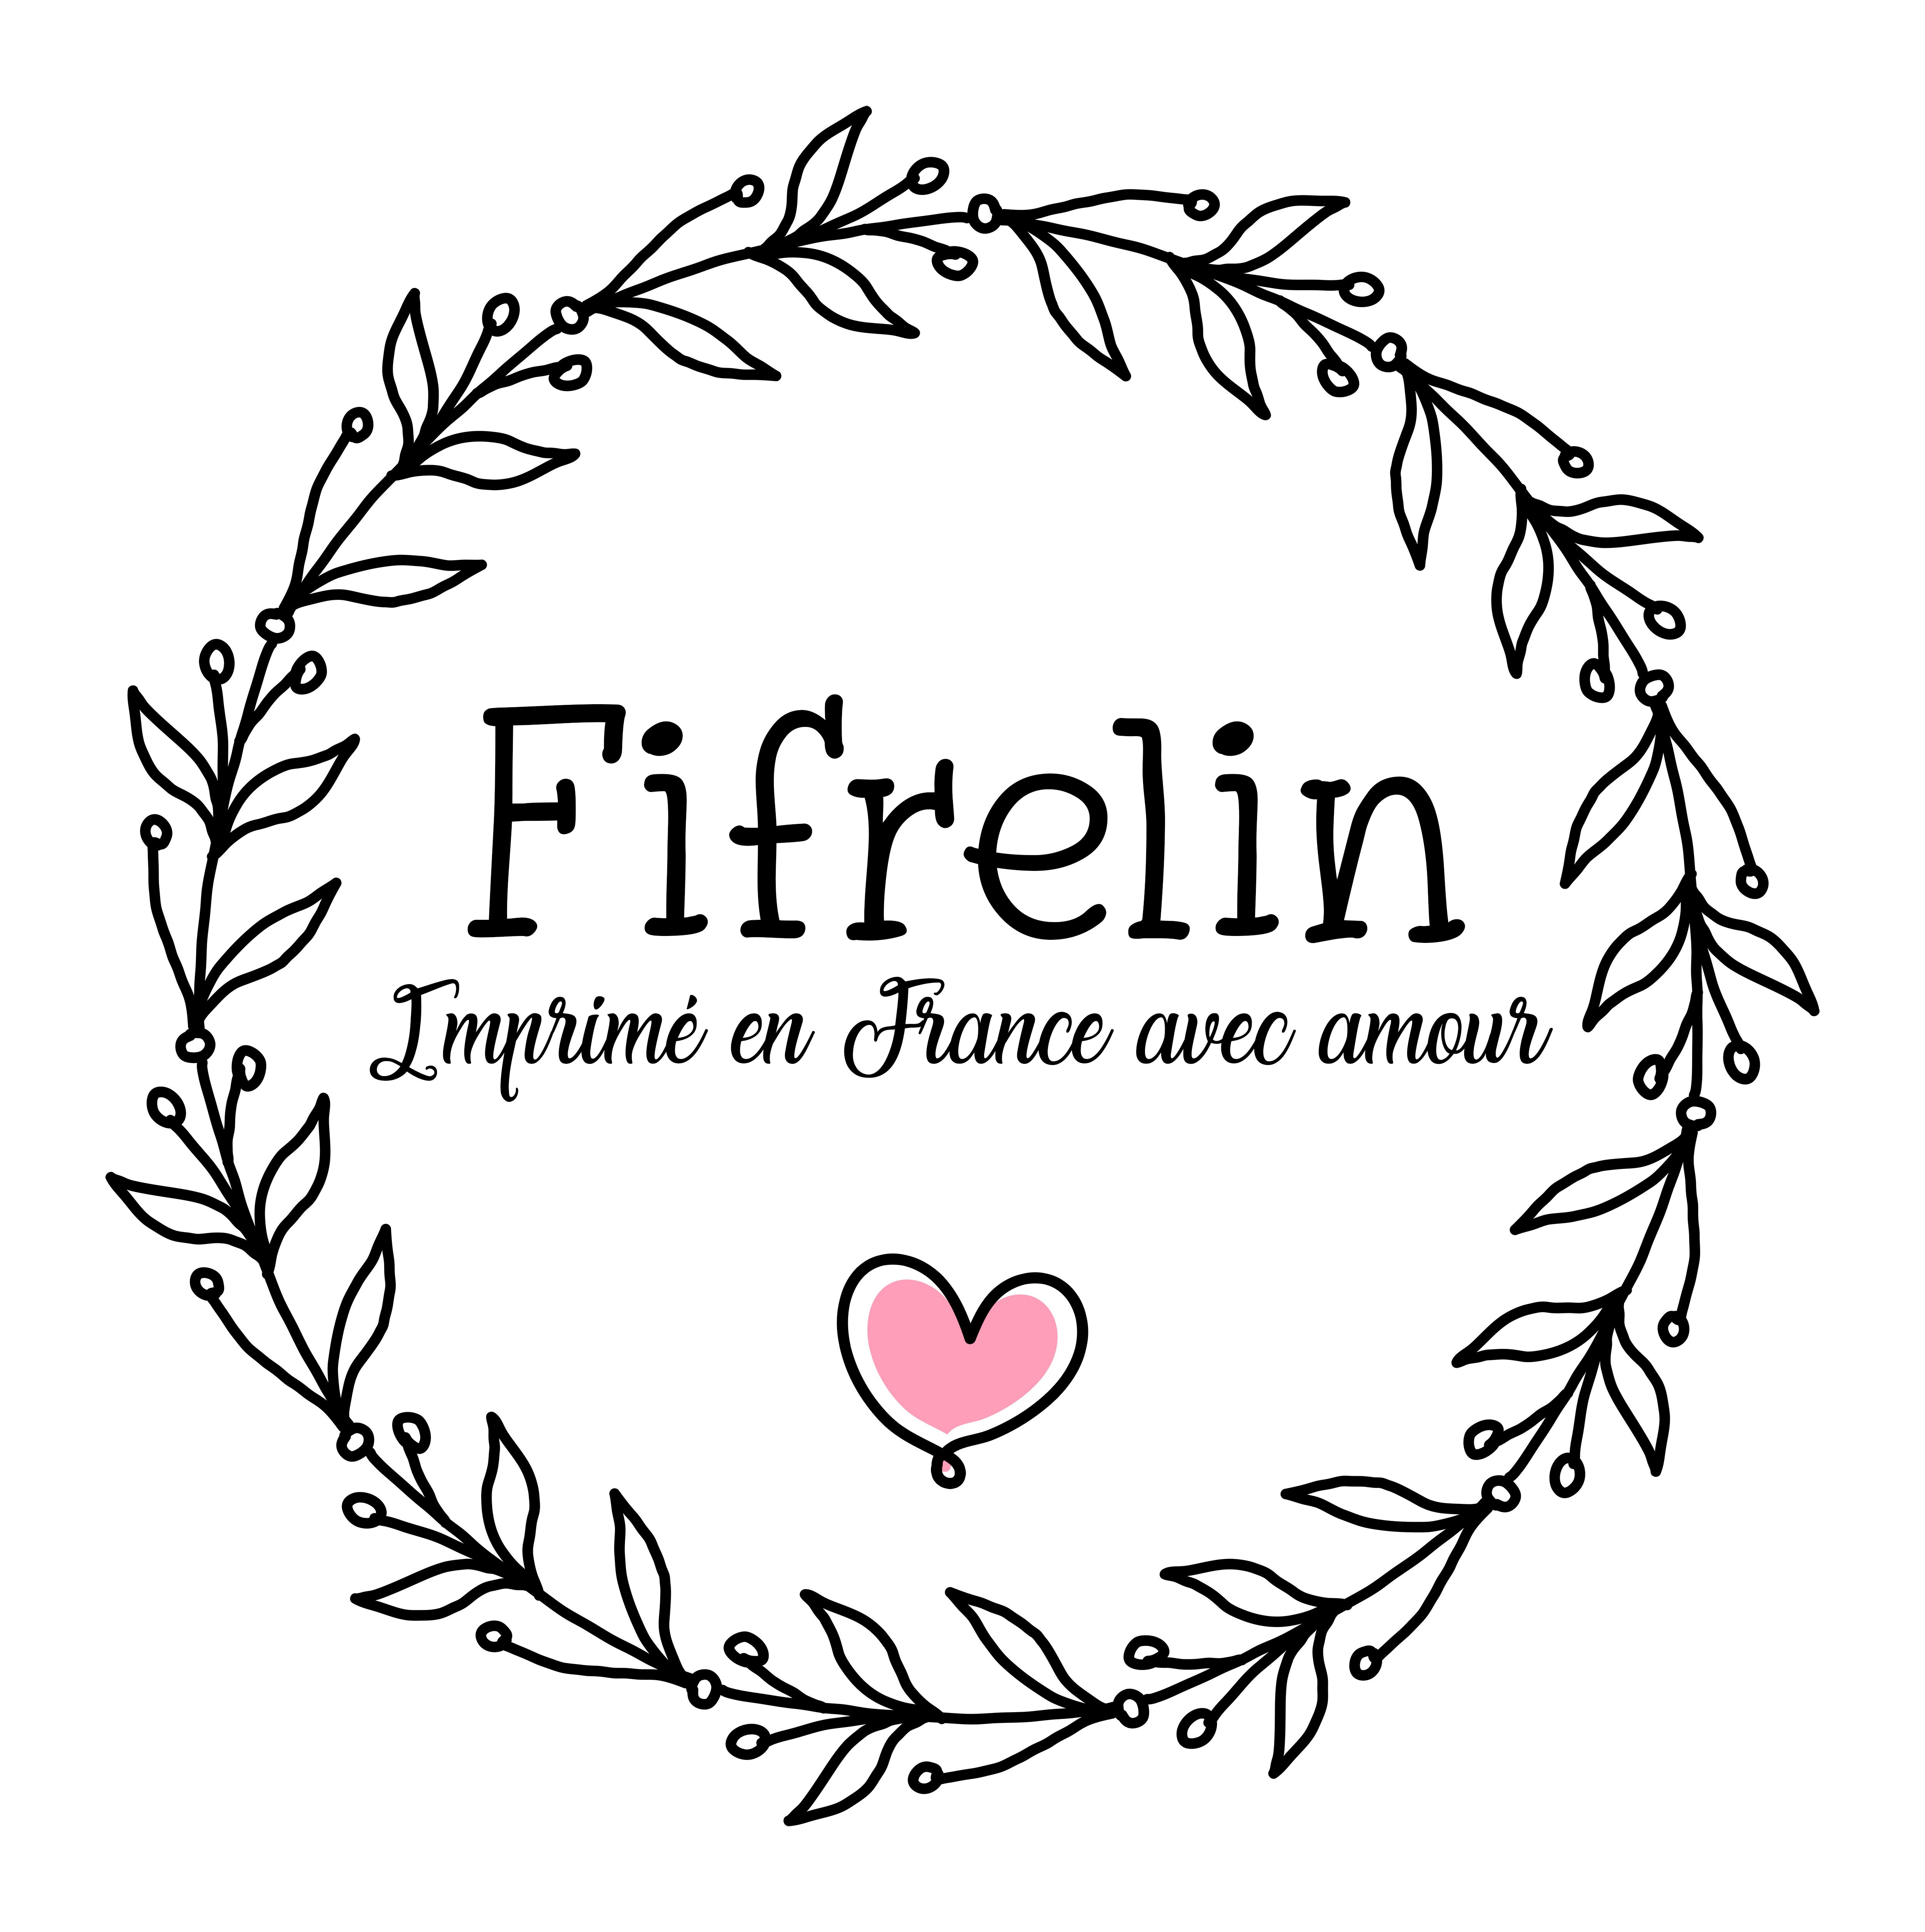 Fifrelin.fr - Imprimé en France avec amour